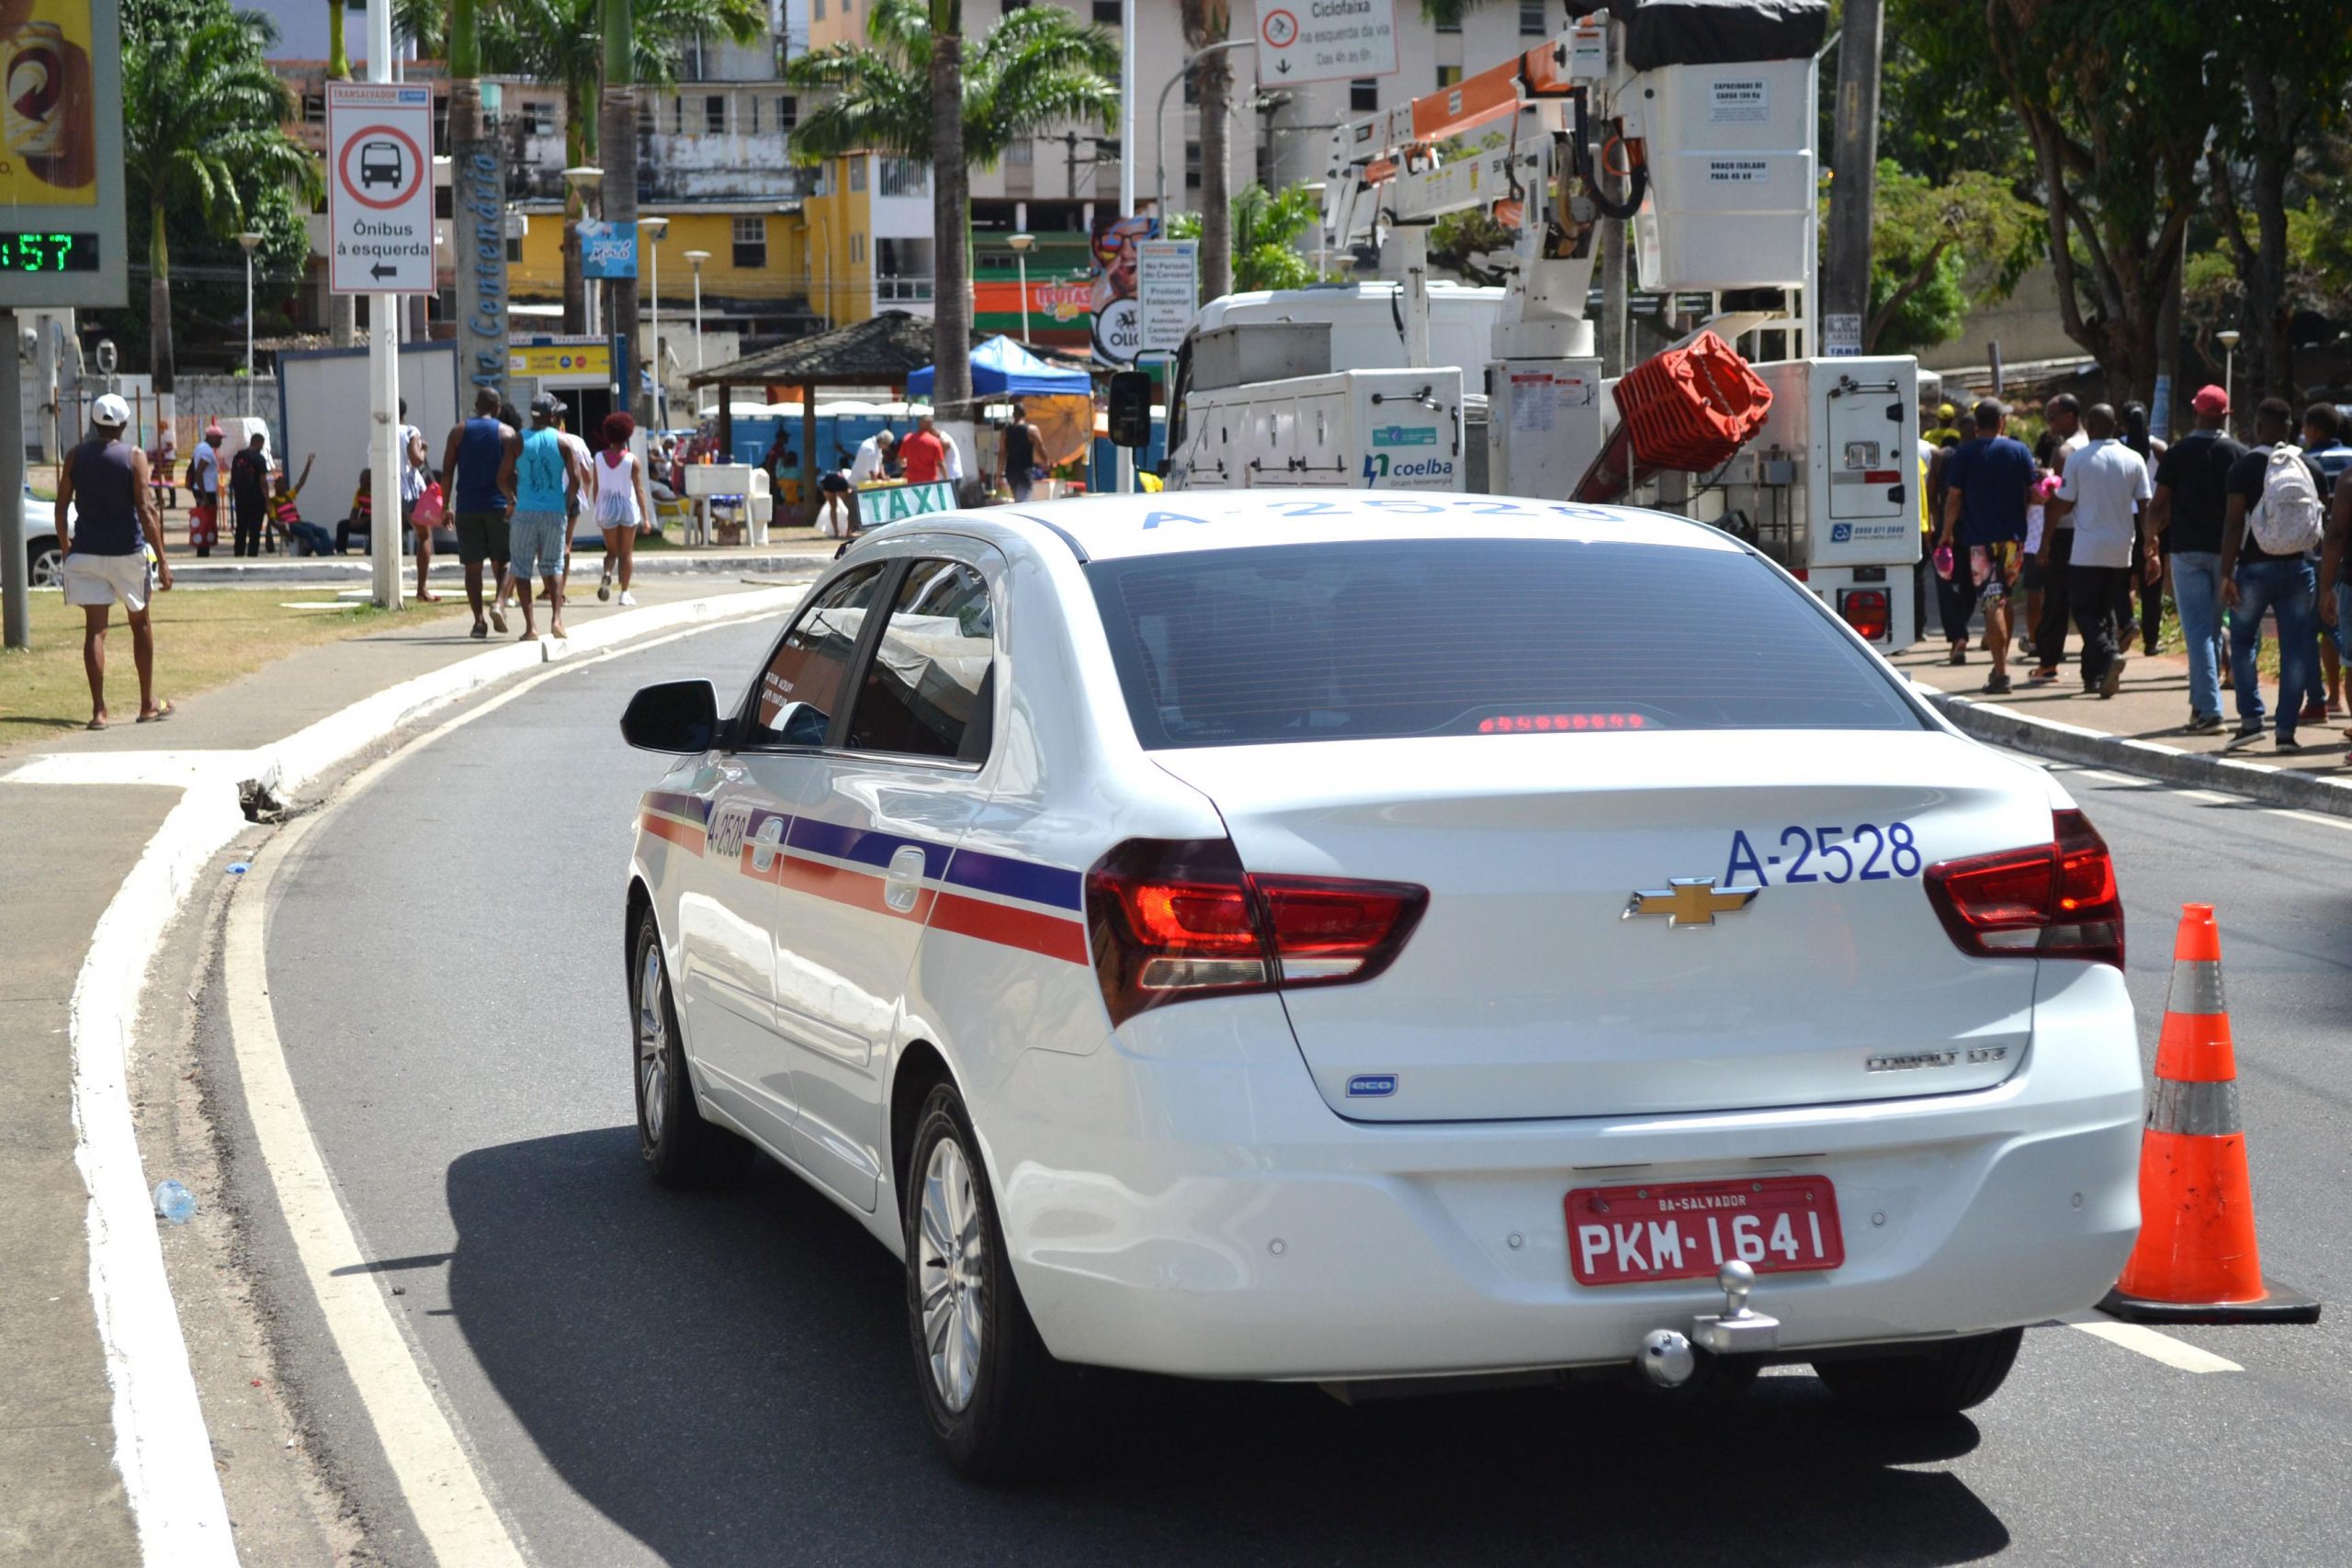 Táxis transportam 131 mil foliões em cinco dias de Carnaval